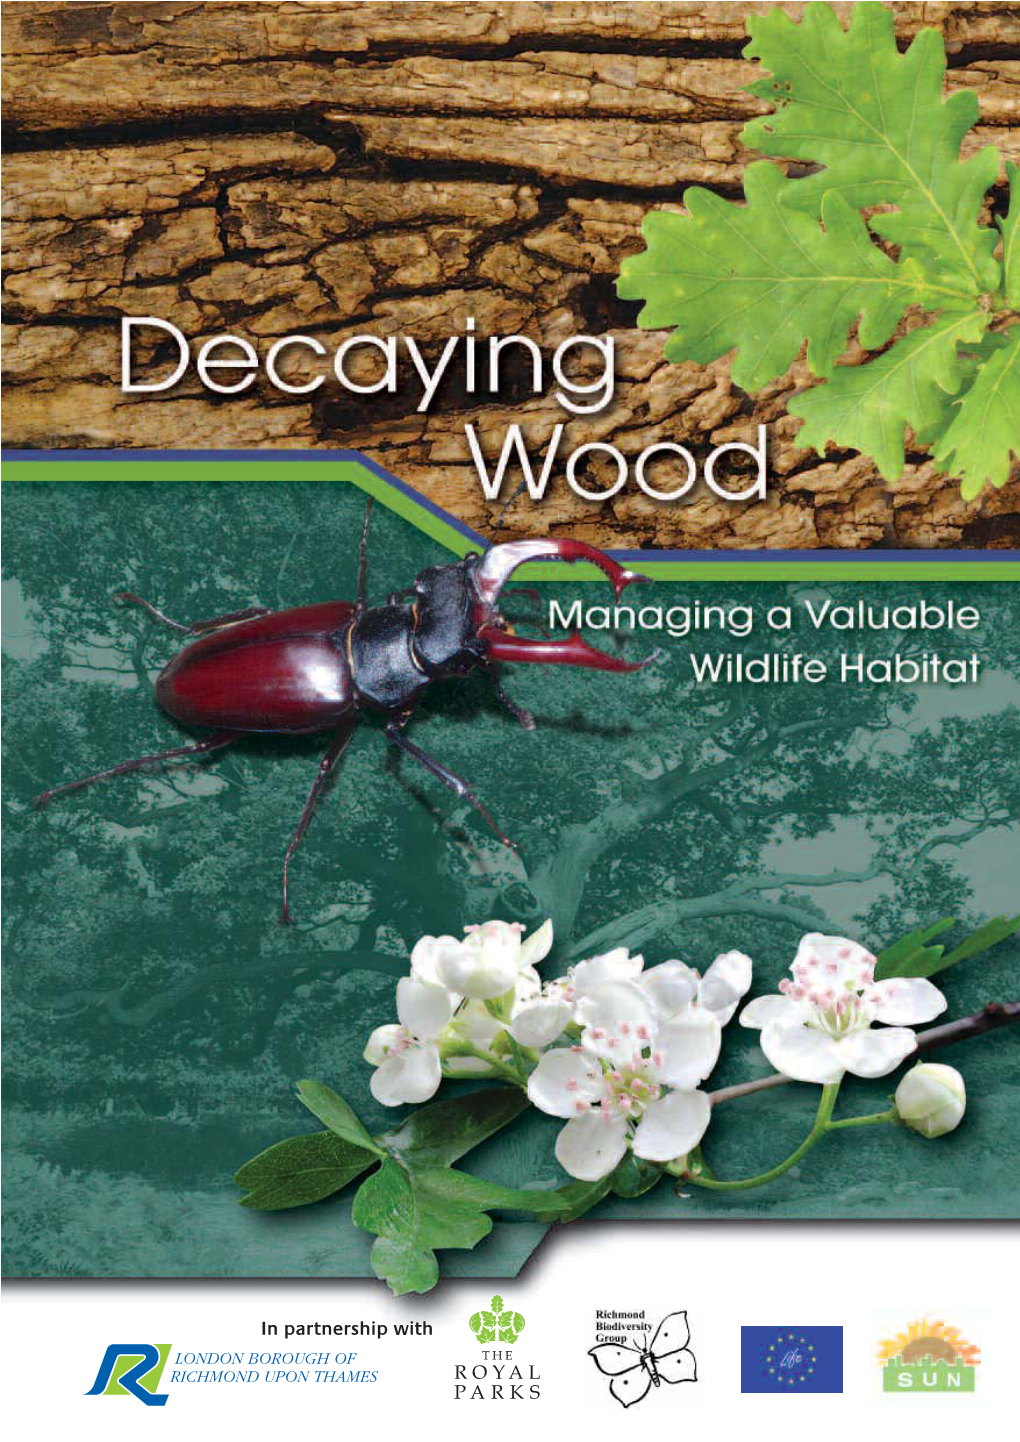 Decaying Wood: Managing a Valuable Wildlife Habitat